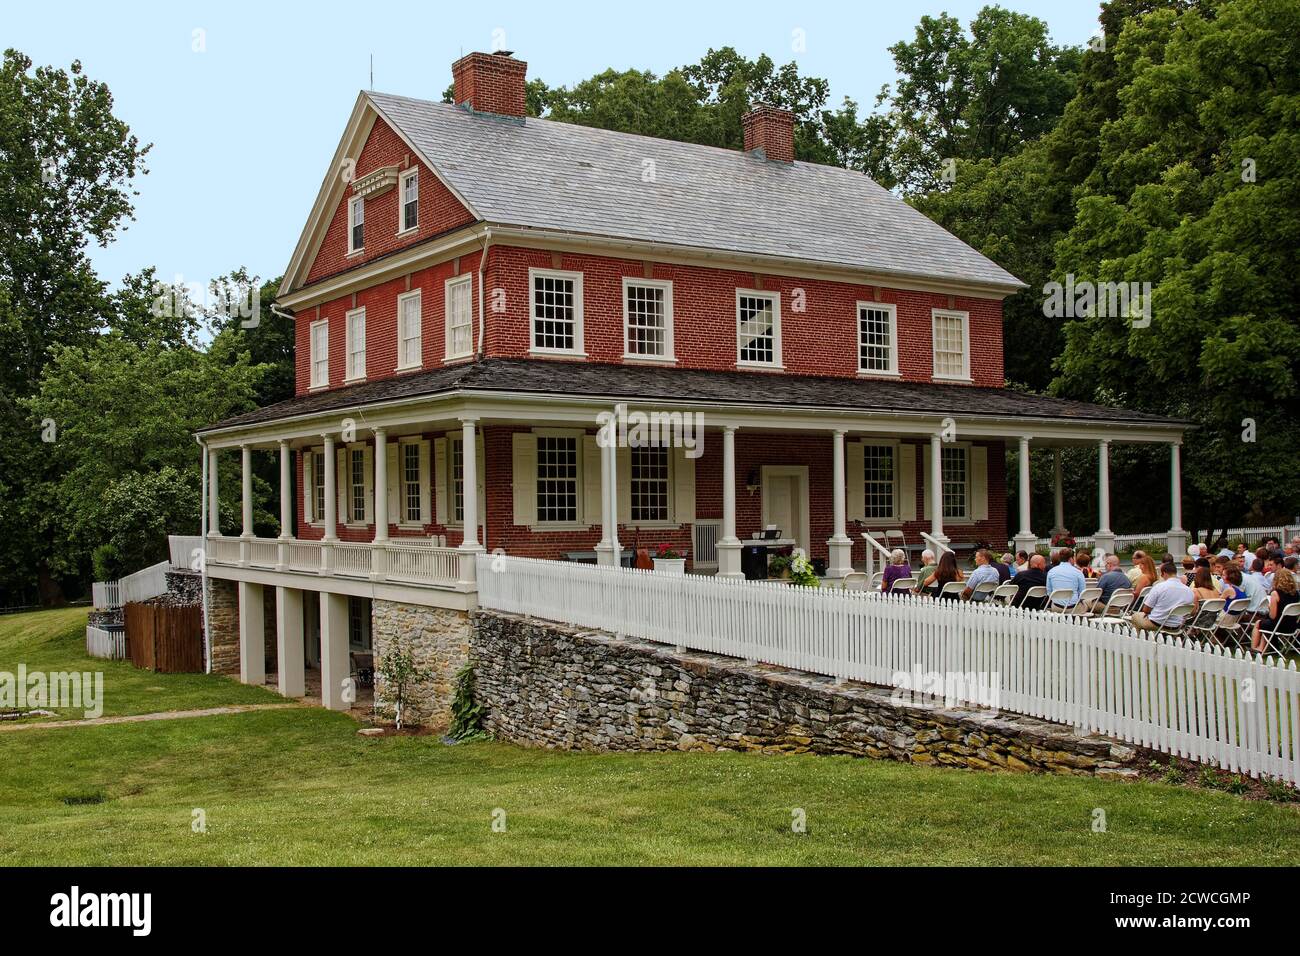 Rock Ford Plantation, maison en brique rouge, 18 siècle, quatre niveaux, porche, style géorgien, personnes assises dans des chaises, mariage, Pennsylvanie, Lancaster, PA Banque D'Images